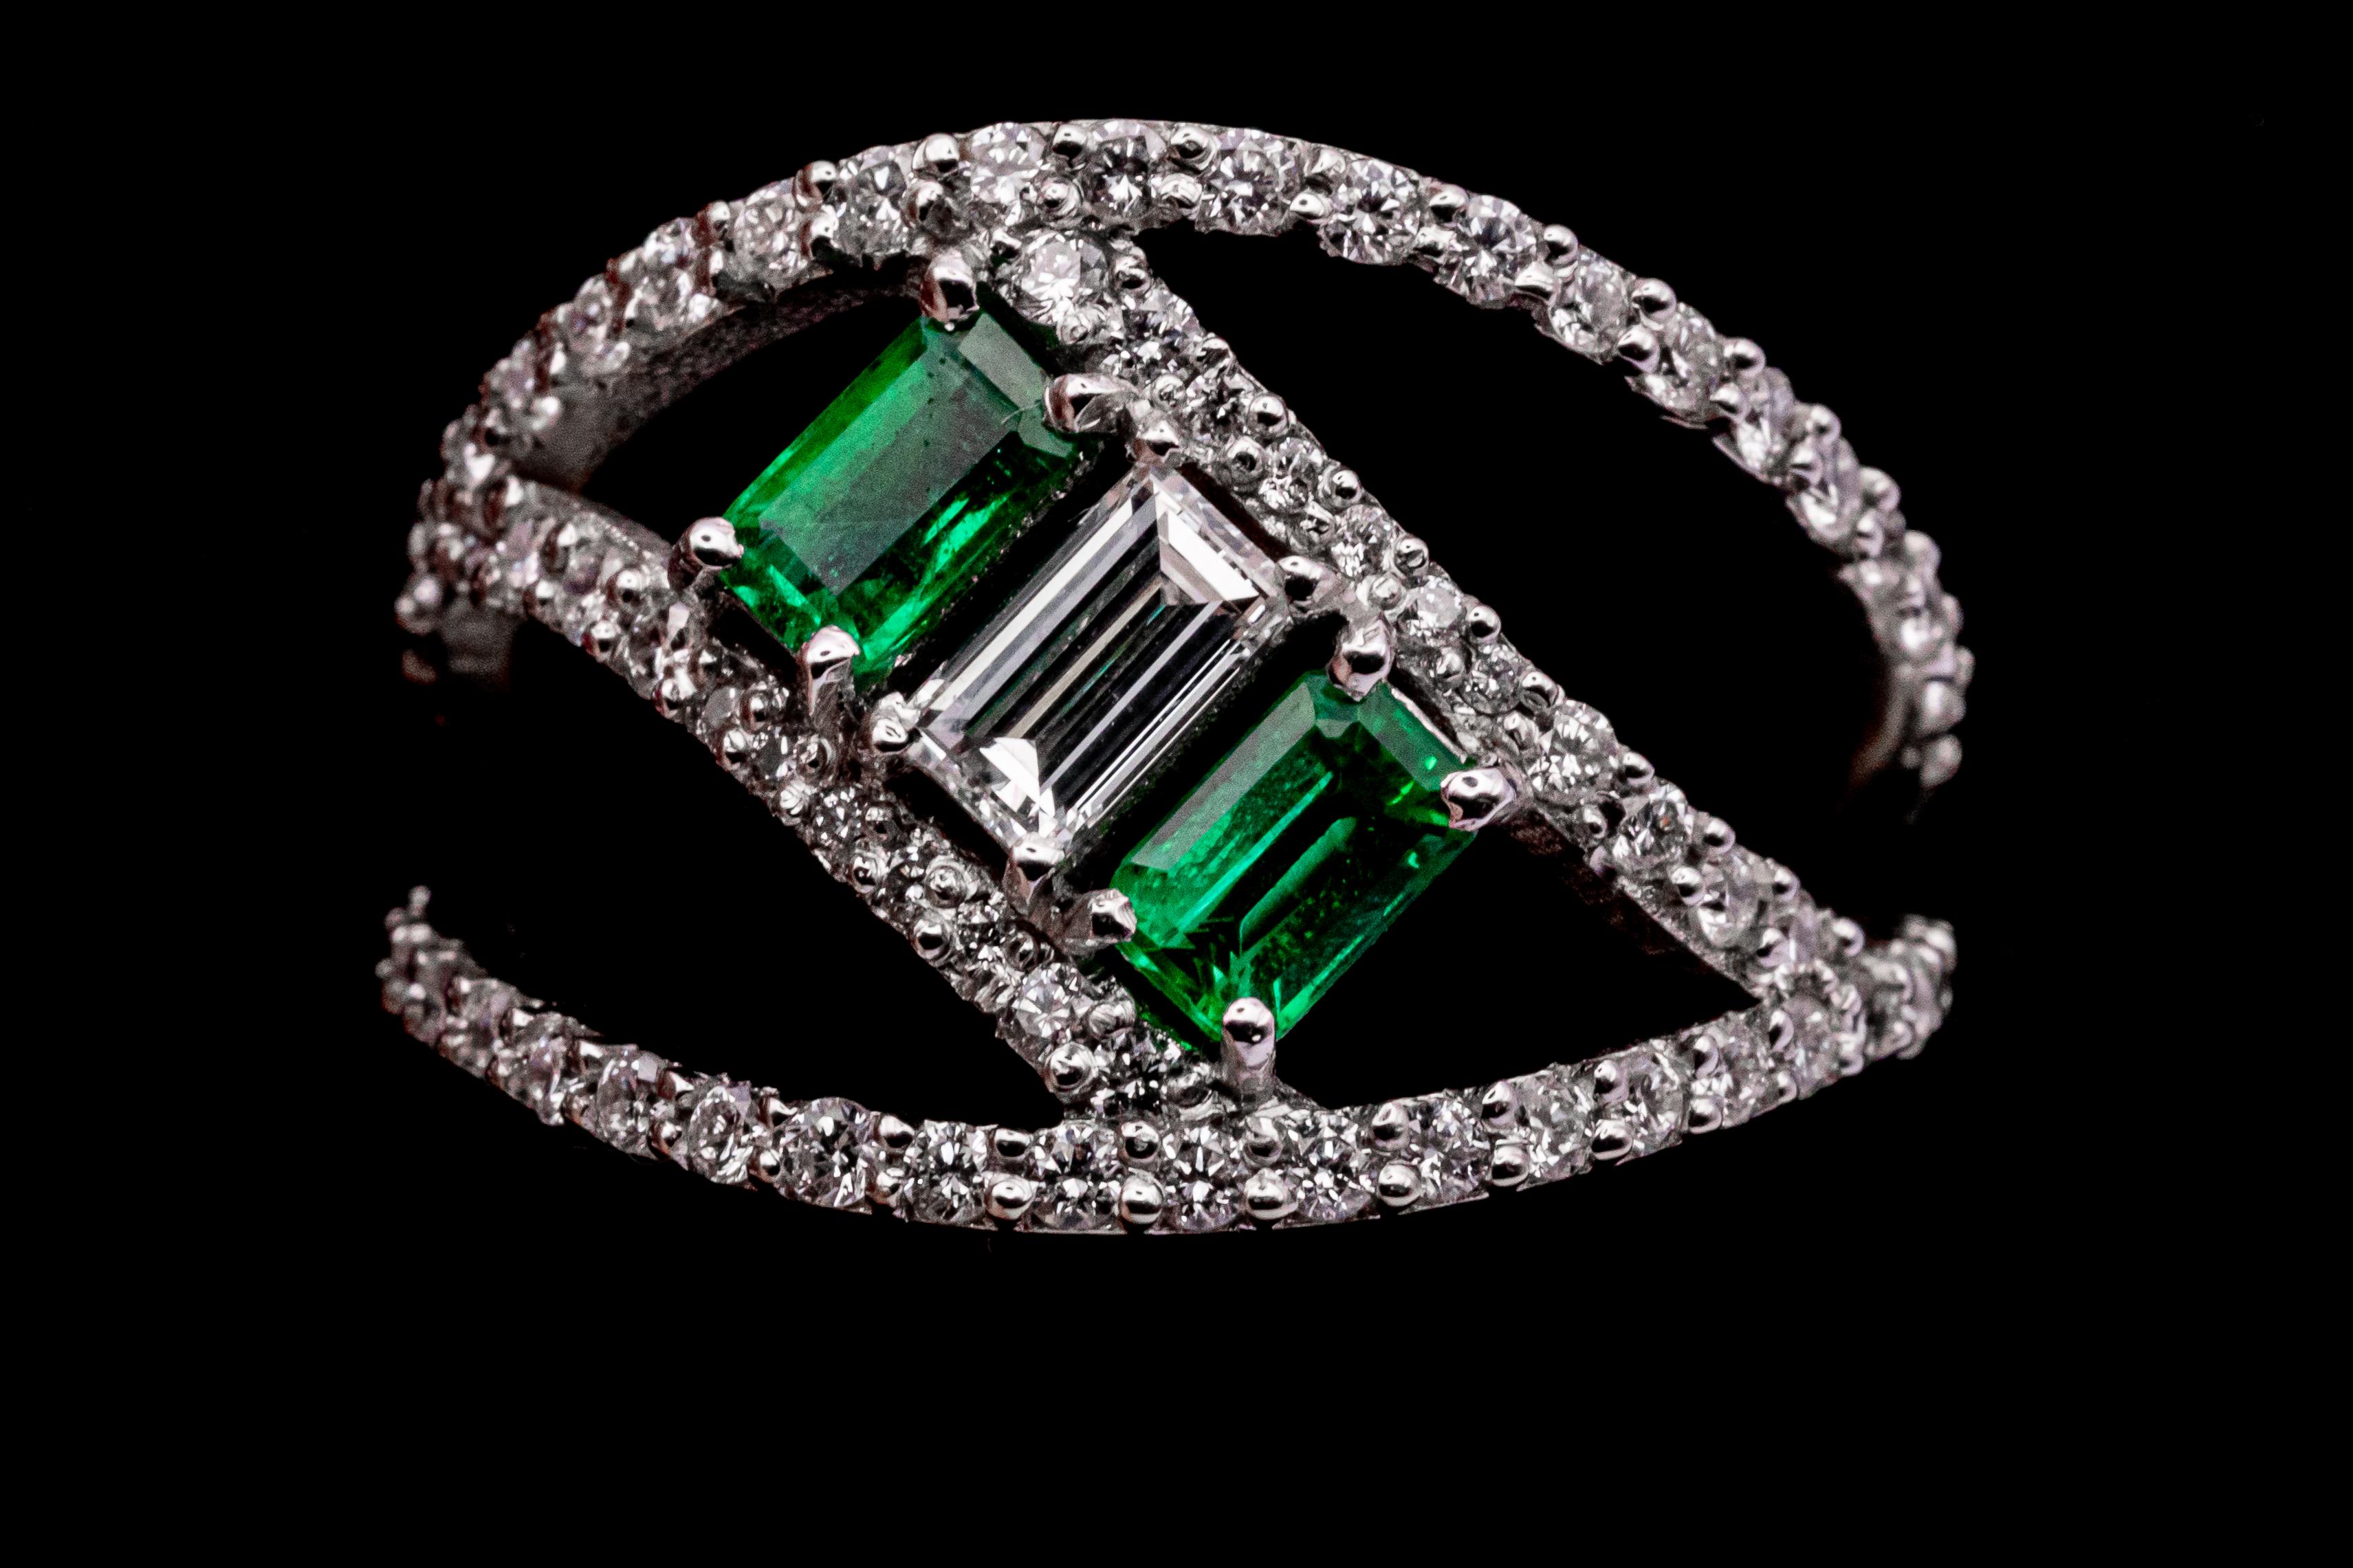 Modernes Design 18 Karat Weißgold Ring mit .27 VS G Farbe Baguetteschliff Diamant und 2 Baguetteschliff Smaragde von .30 Karat jeweils mit 64 Diamanten für insgesamt .64 Karat verziert. Gold wiegt 4 g.
Dieser von Leo Milano entworfene Ring ist einer